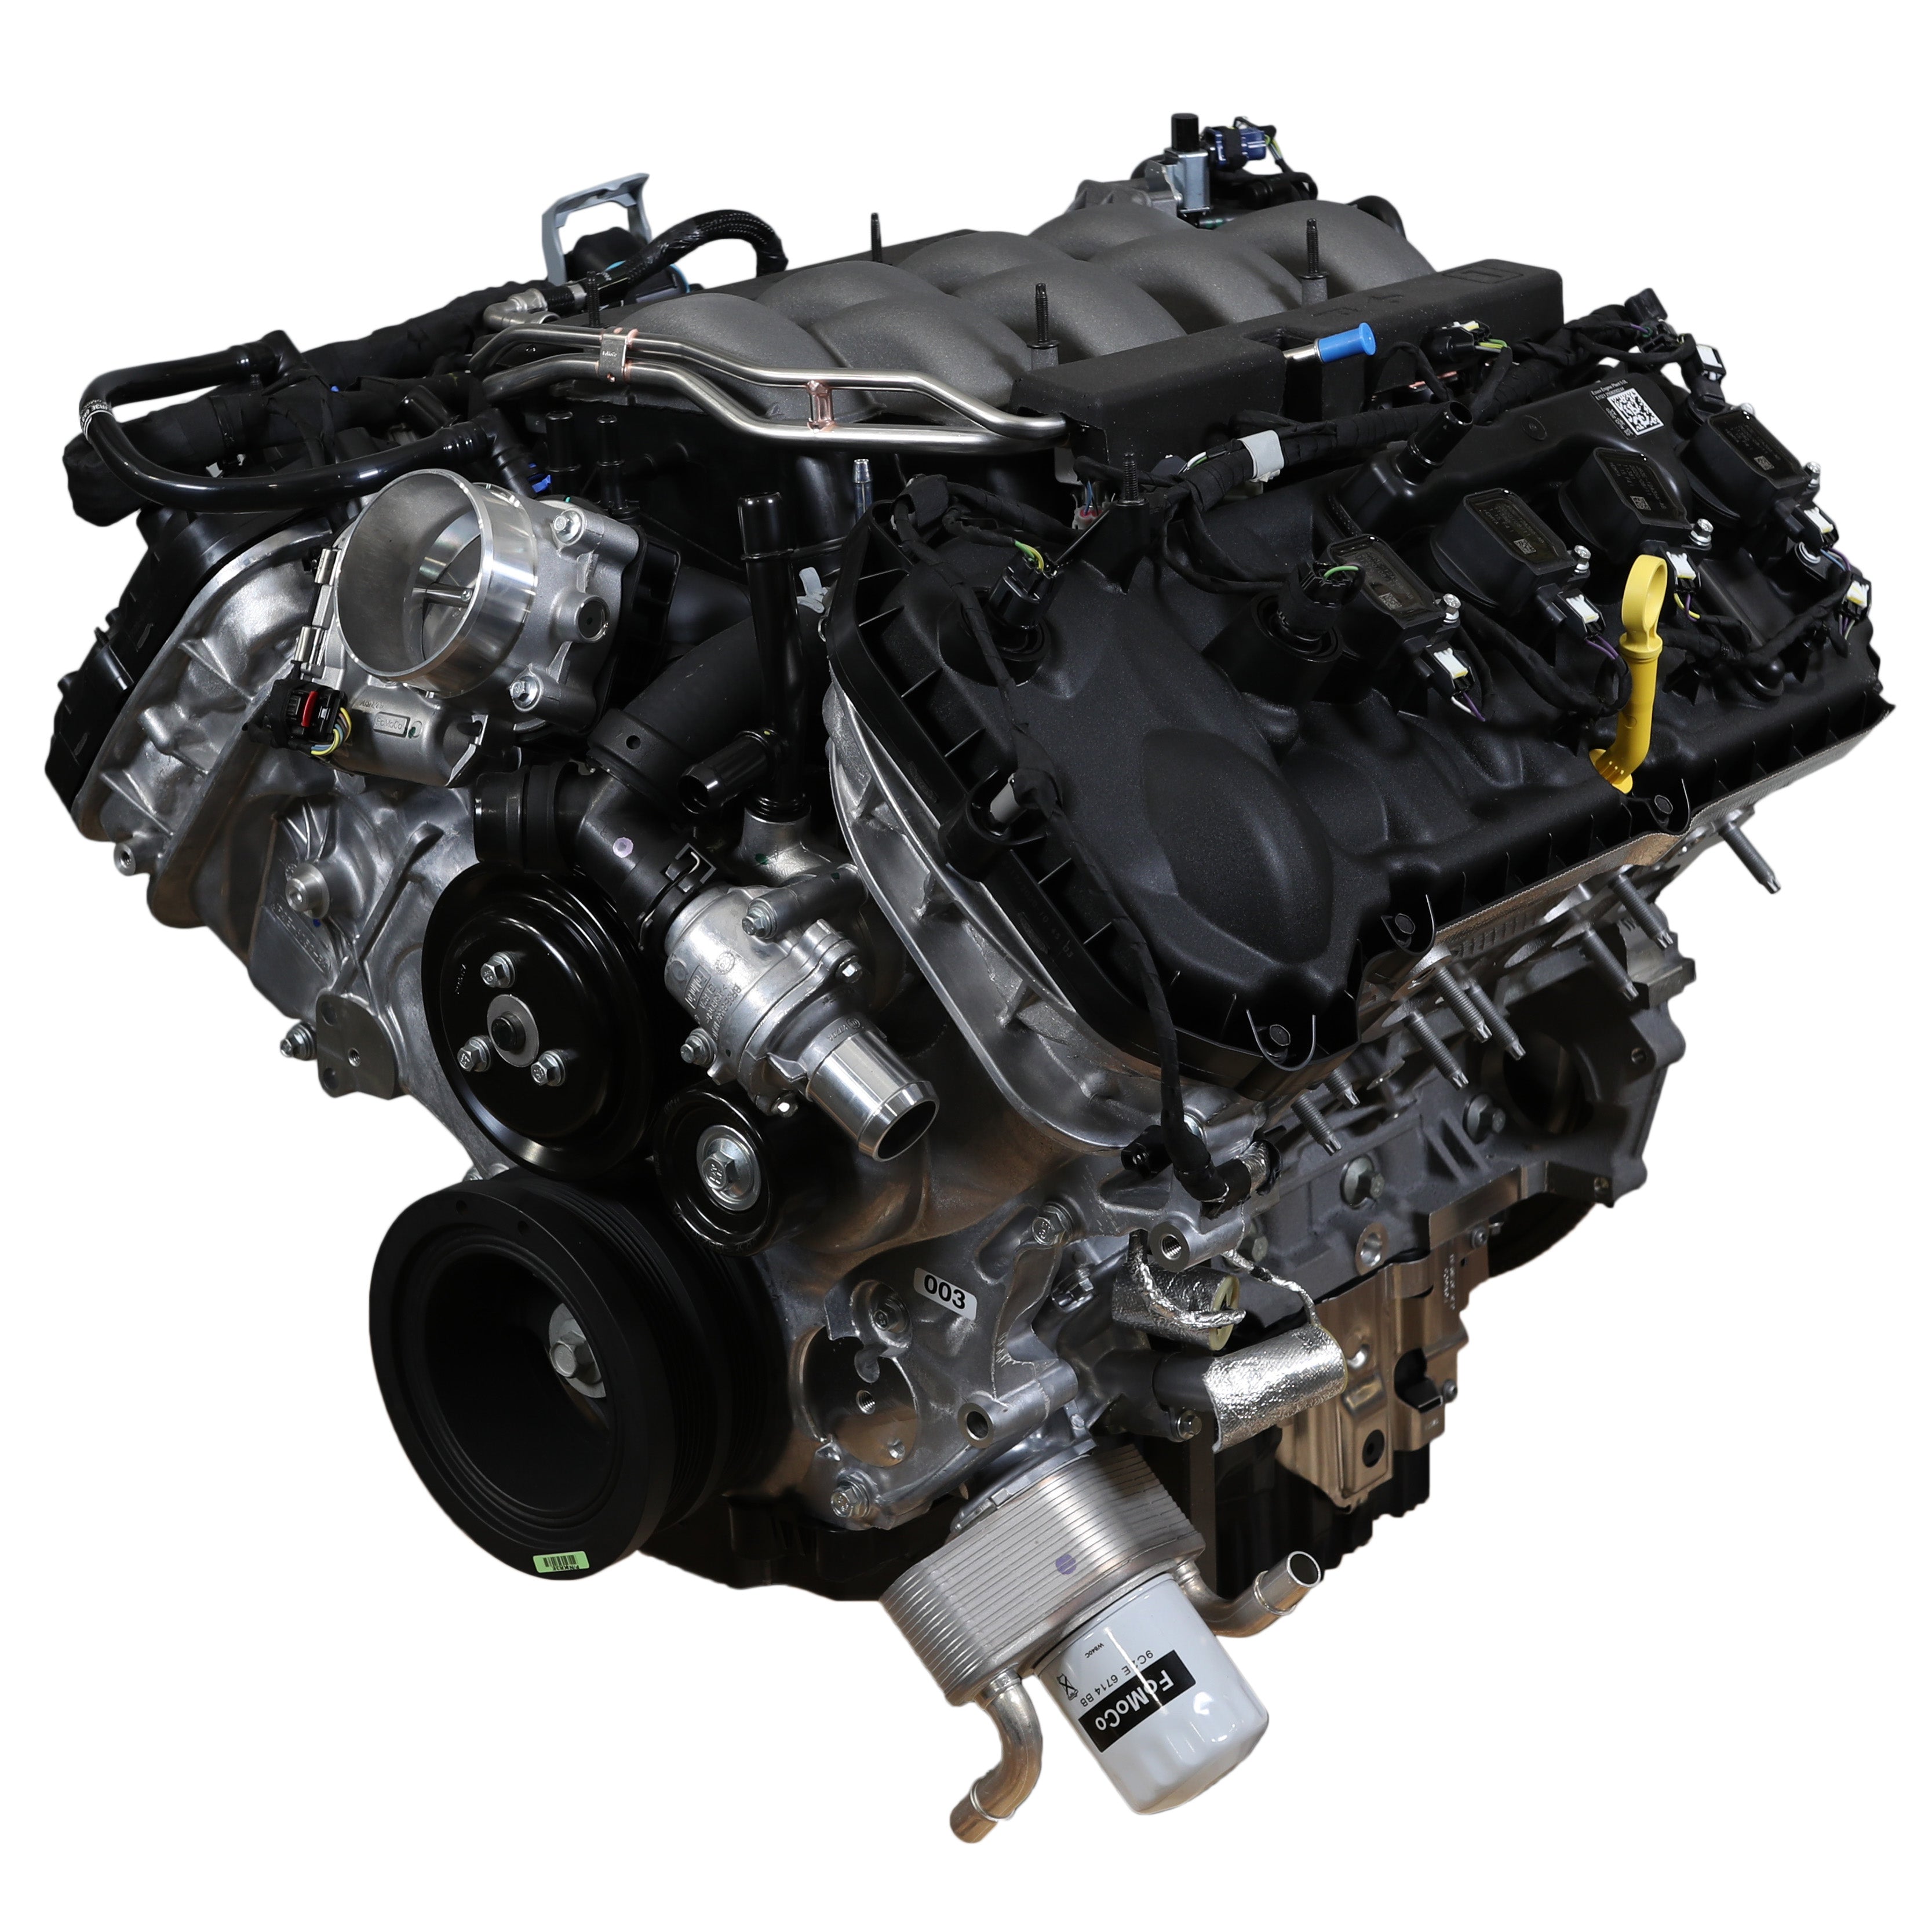 Κινητήρας Ford Performance GEN 3 5.0L Coyote 460HP Mustang V8 Crate